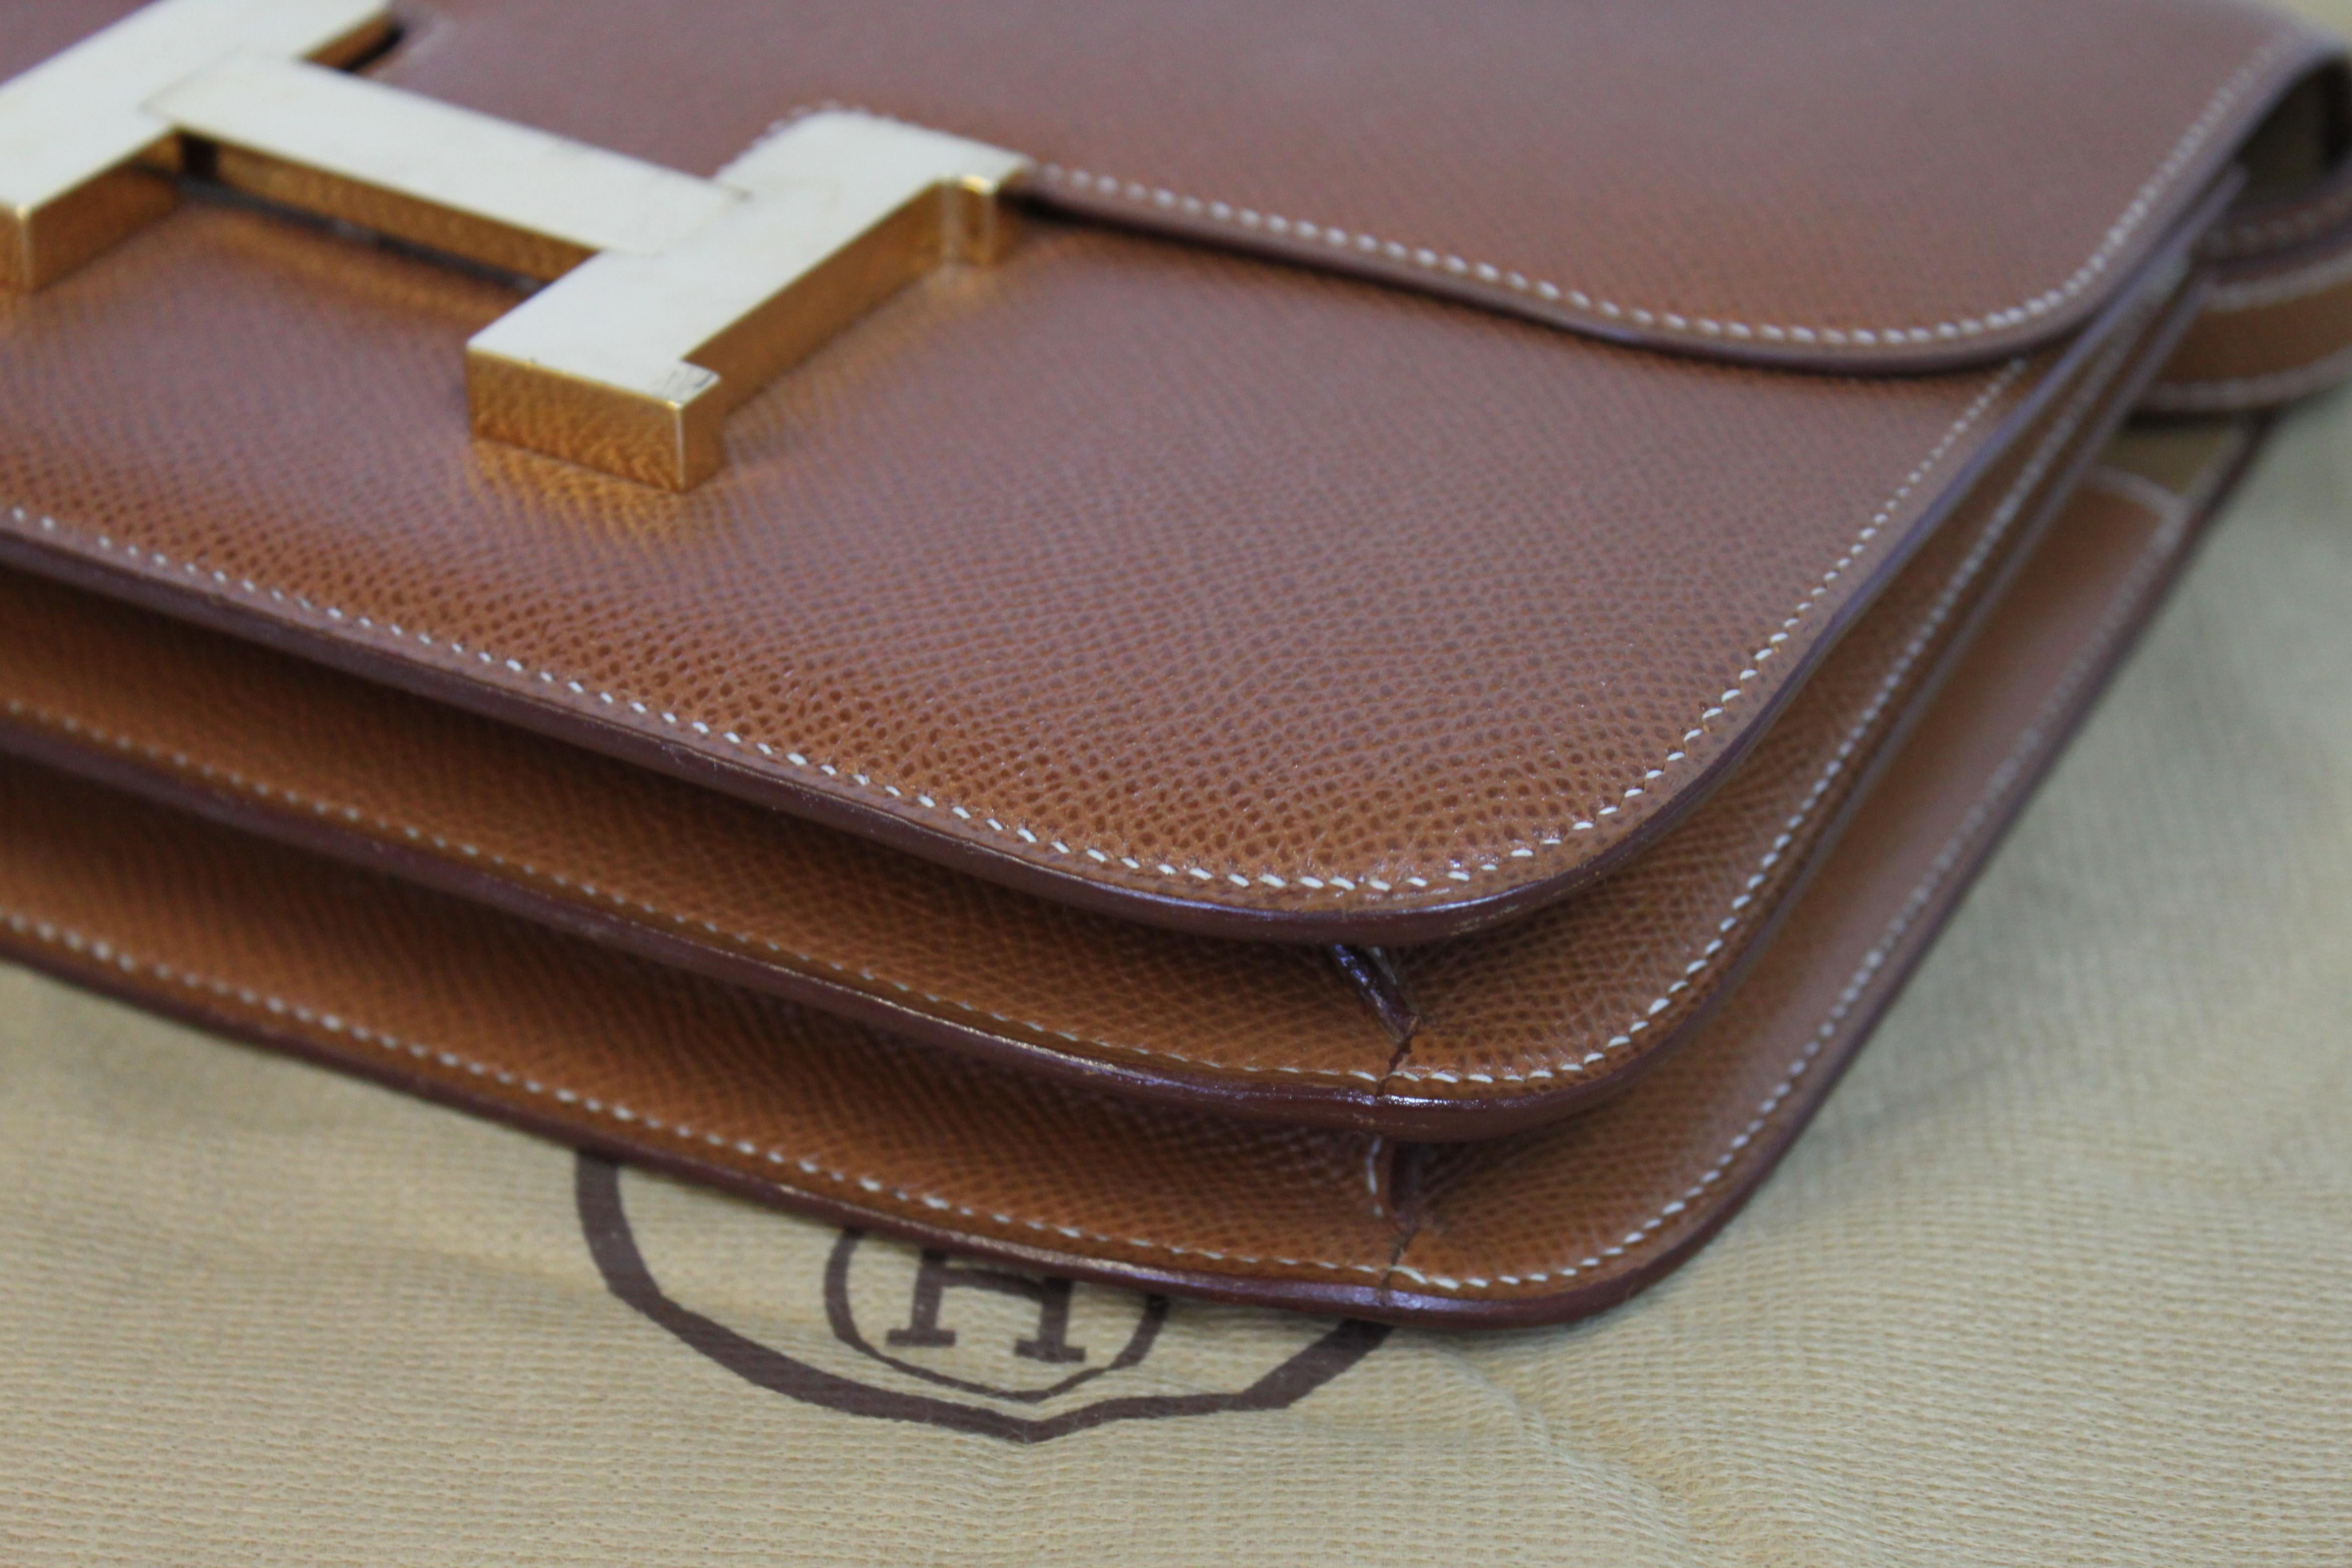 Hermes Constance 24 Shoulder Bag brown/tan epsom leather with gold Hardware For Sale 3